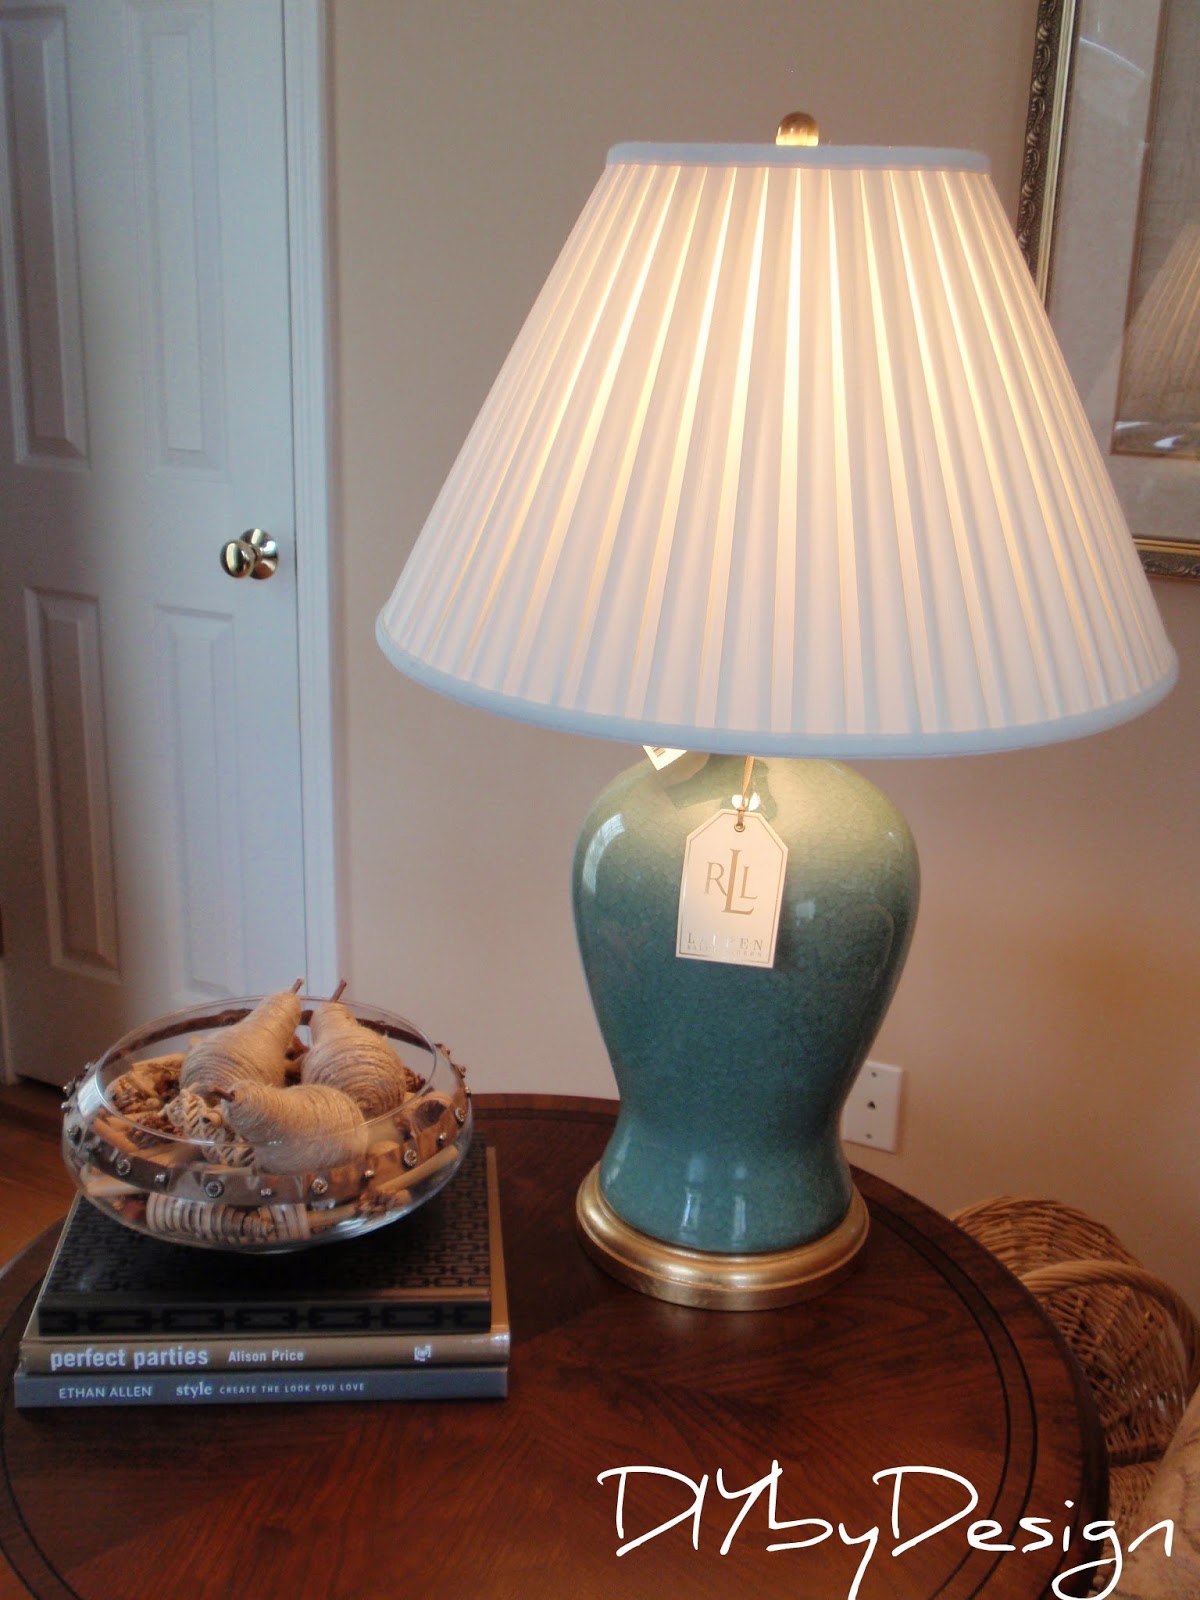 Ralph Lauren Table Lamps At Homegoods, Ralph Lauren Table Lamps Home Goods